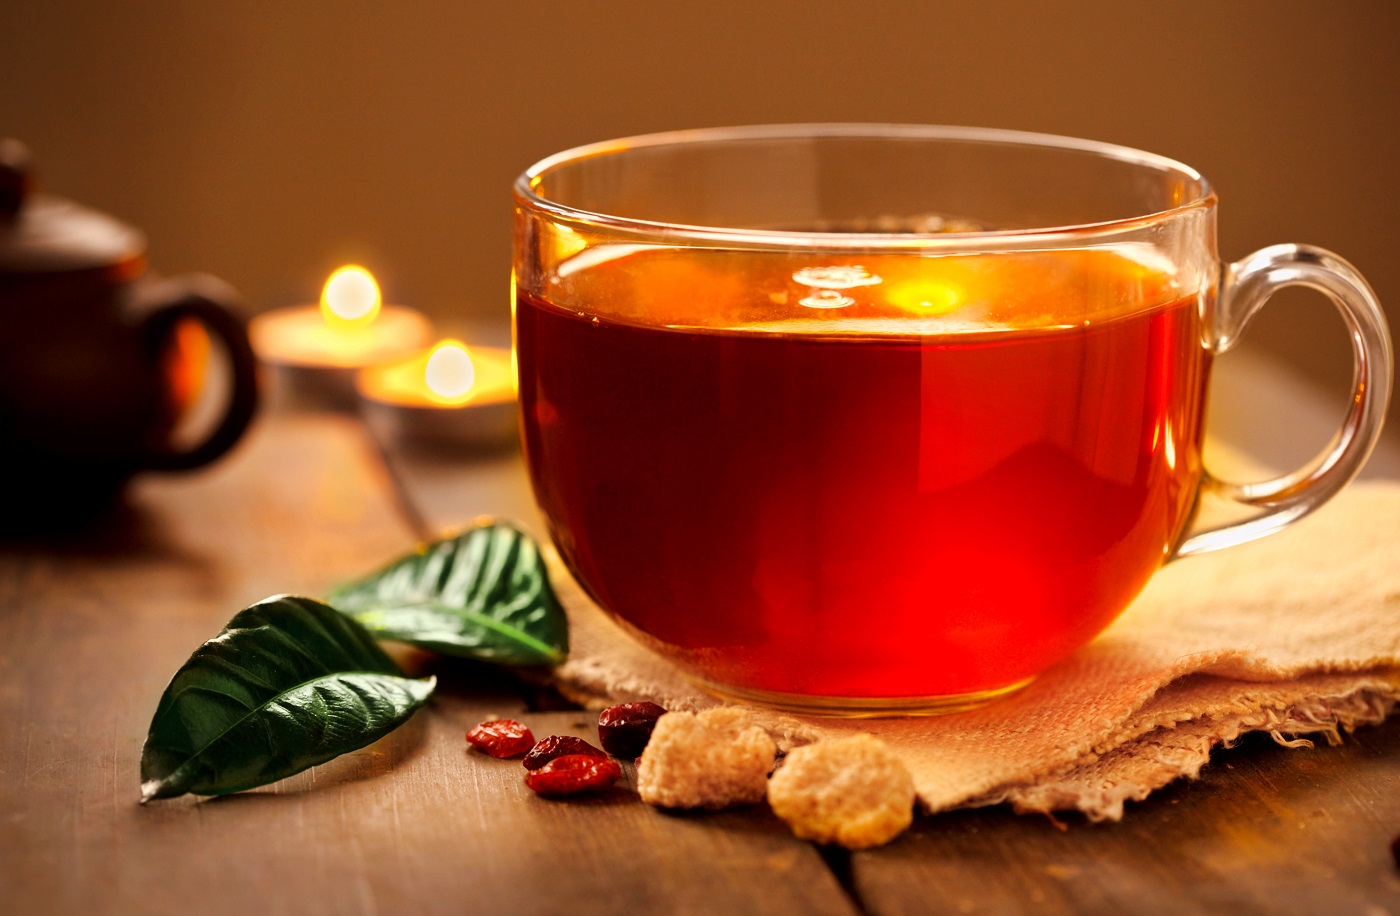 Megvan a lista! Ez az 5 legjobb fogyókúrás tea, ami mérhetően fogyaszt